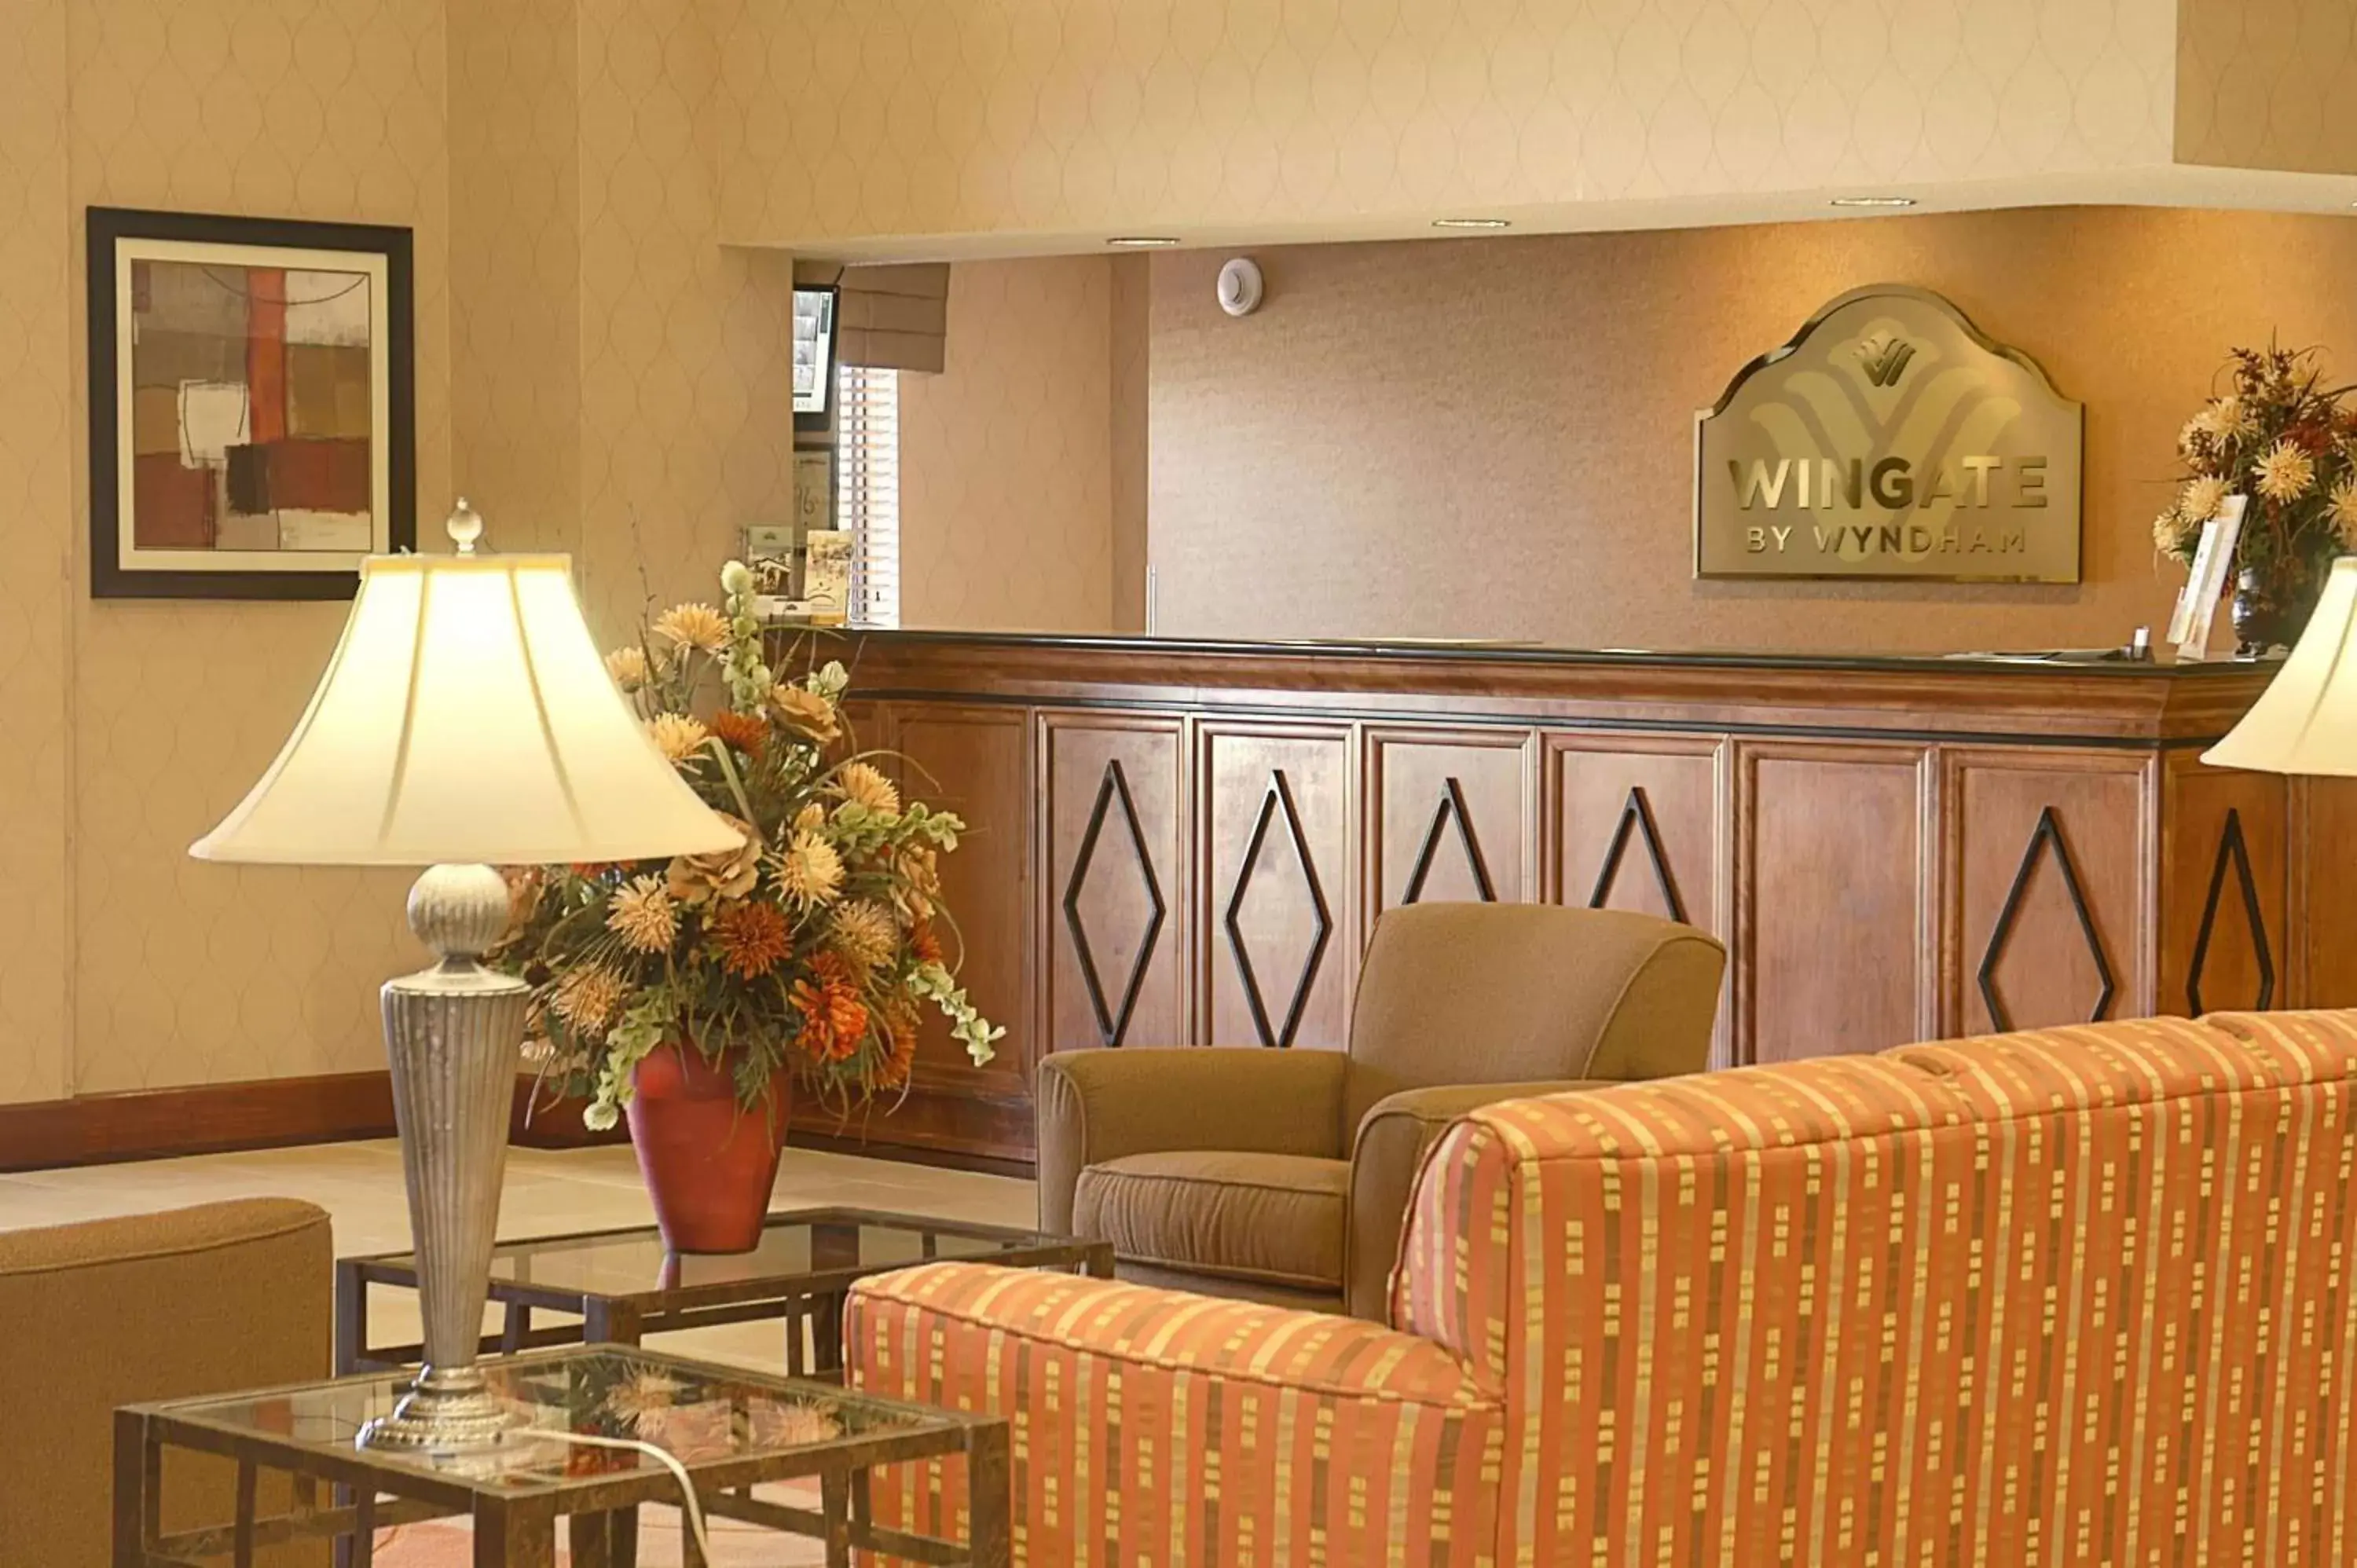 Lobby or reception, Lobby/Reception in Wingate By Wyndham - Warner Robins